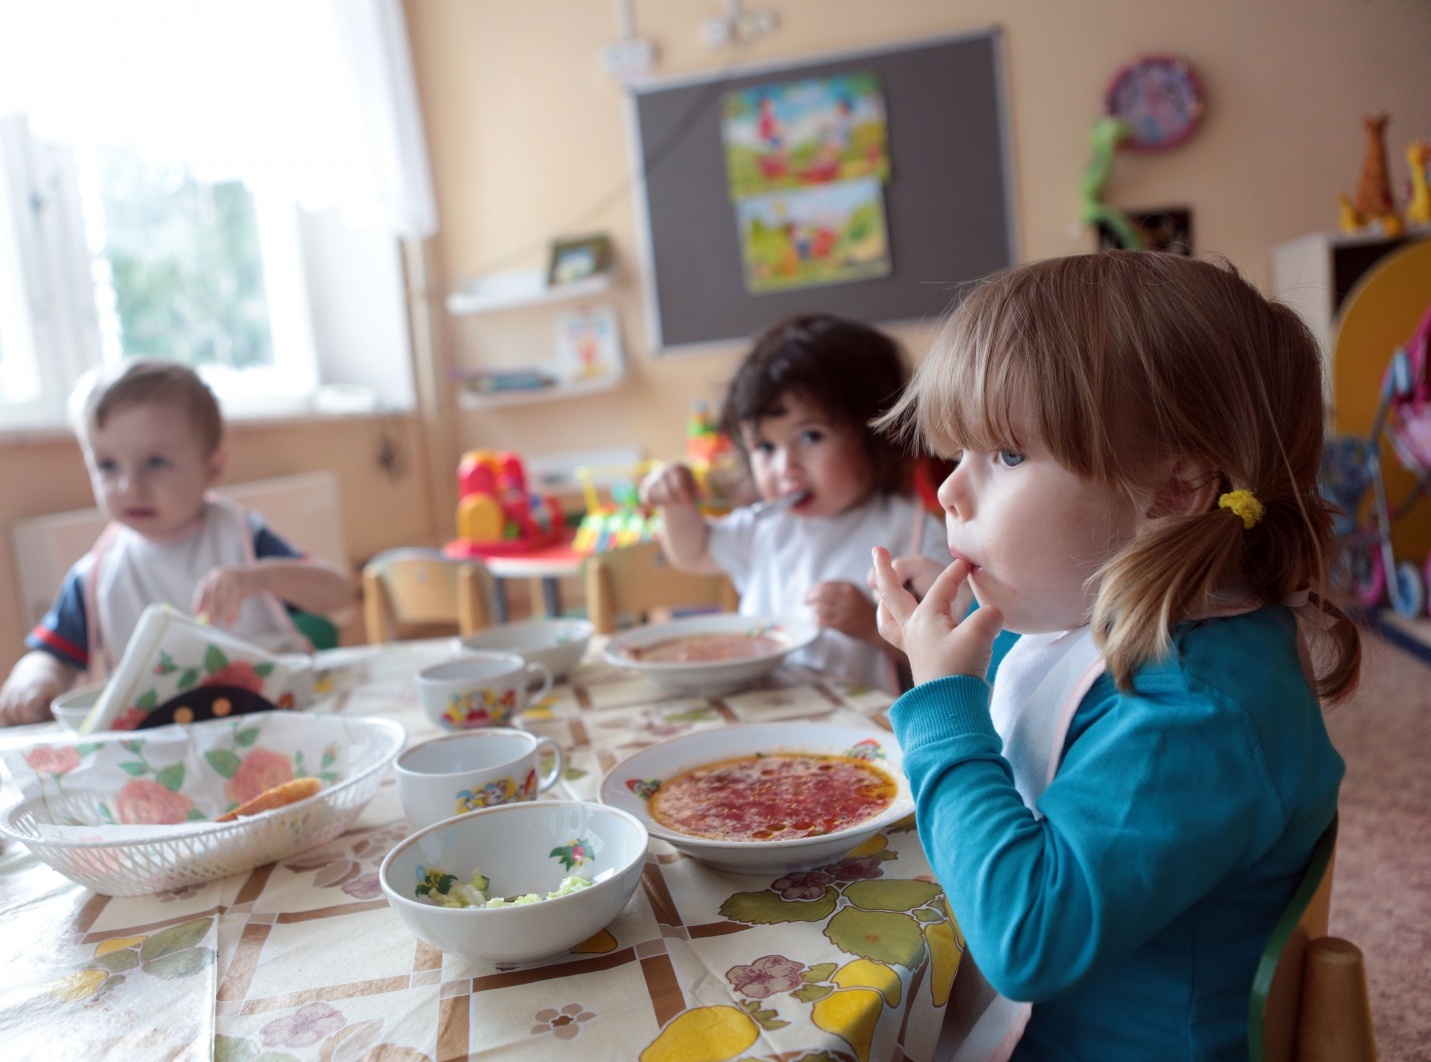 Сыр с растительными стеринами обнаружен в детском саду г. Рыбинска